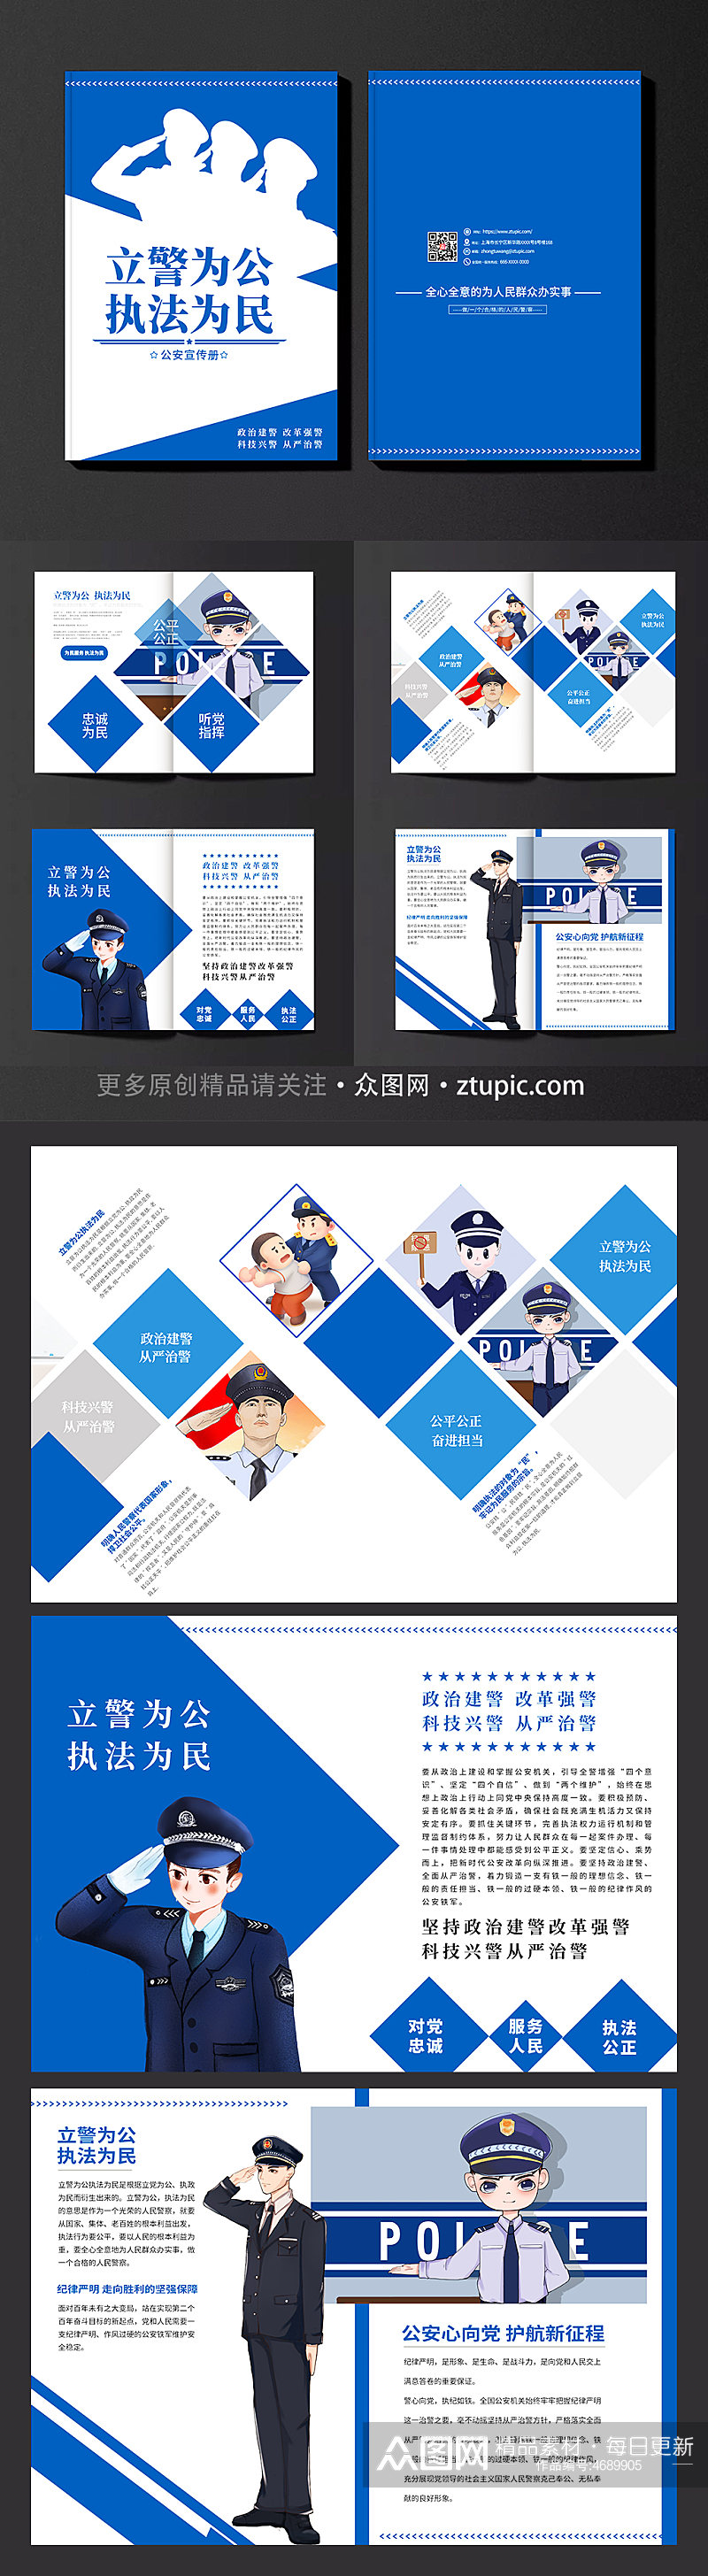 蓝色时尚公安交警宣传画册素材